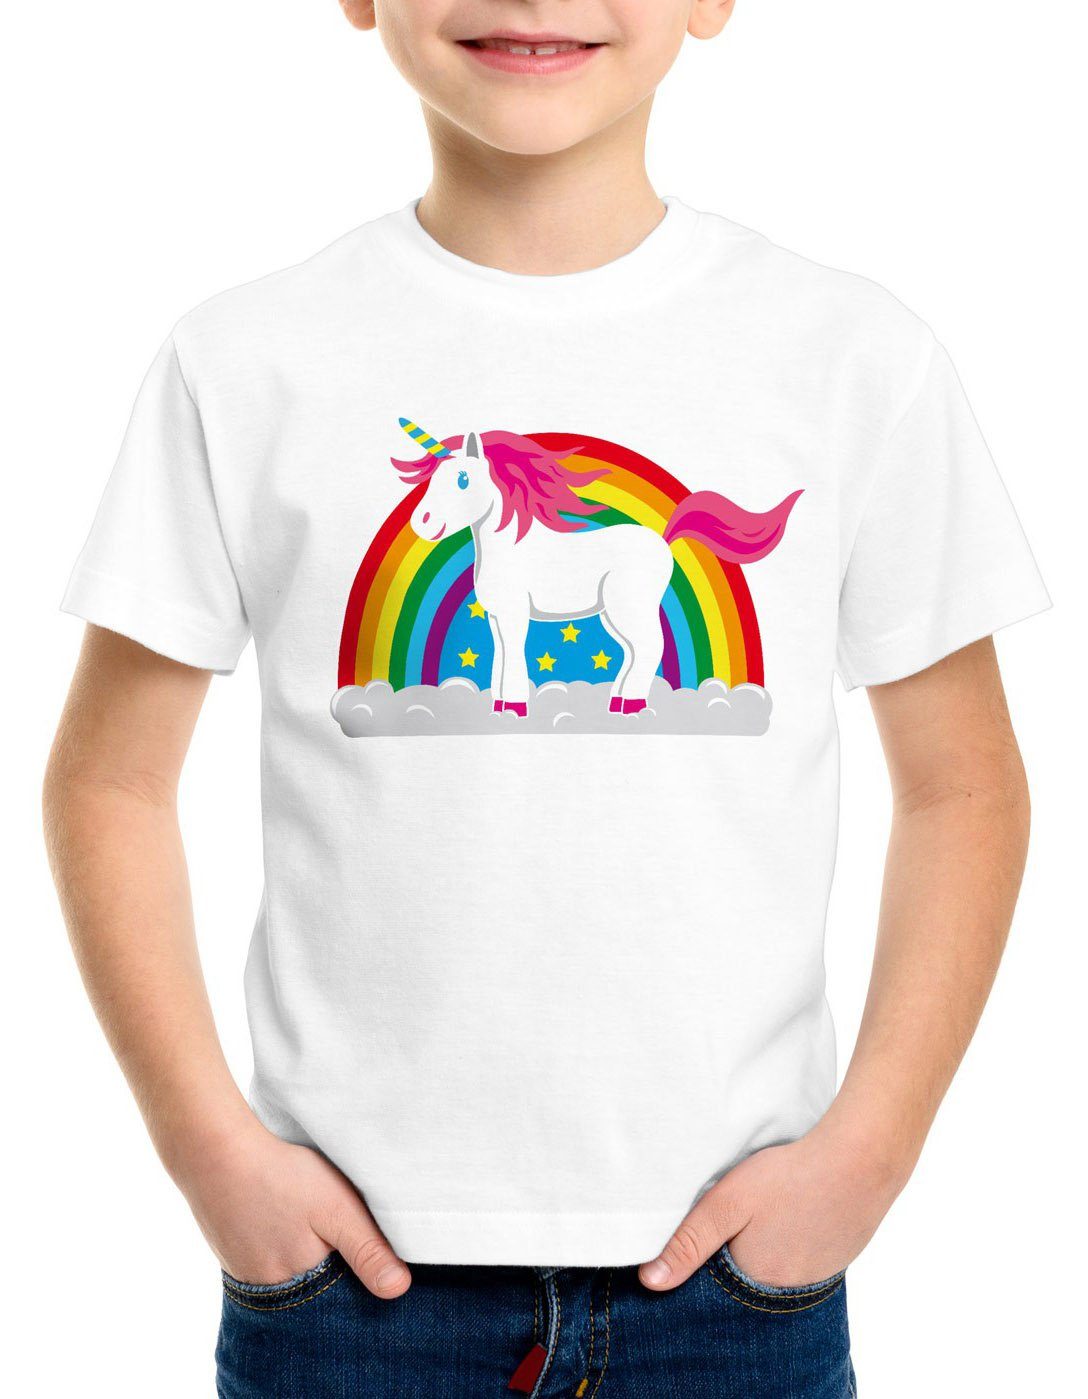 Regenbogen style3 Print-Shirt Einhorn top funshirt Regenbogen Kinder T-Shirt süß Unicorn pferd fun